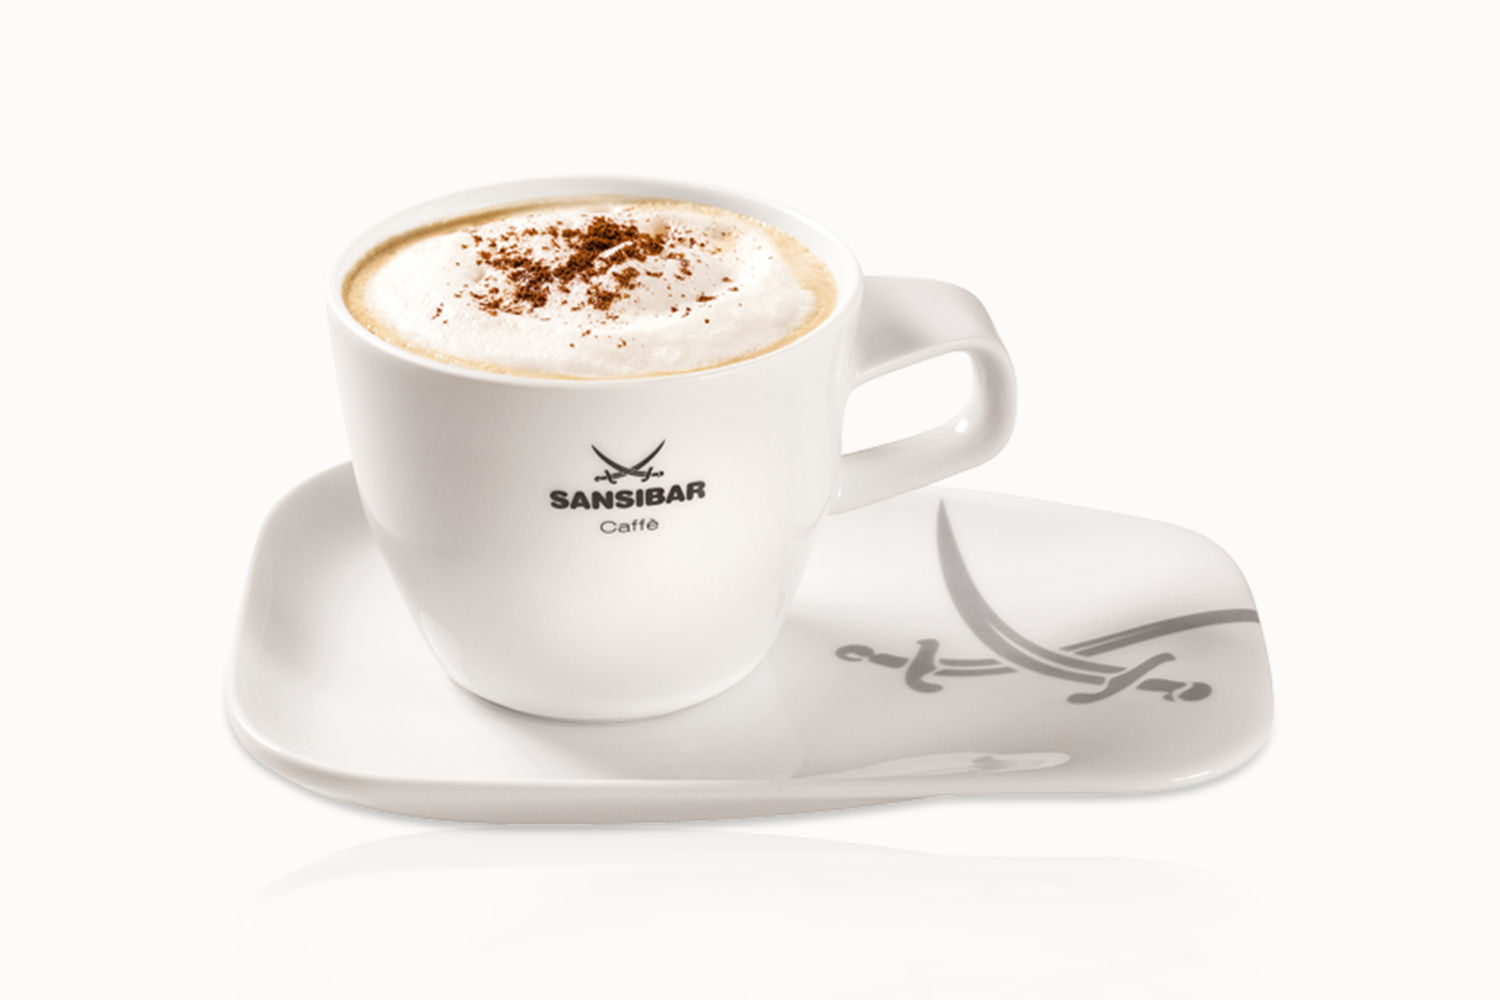 J.J. Darboven Marken – Sansibar Cappuccino auf Untertasse